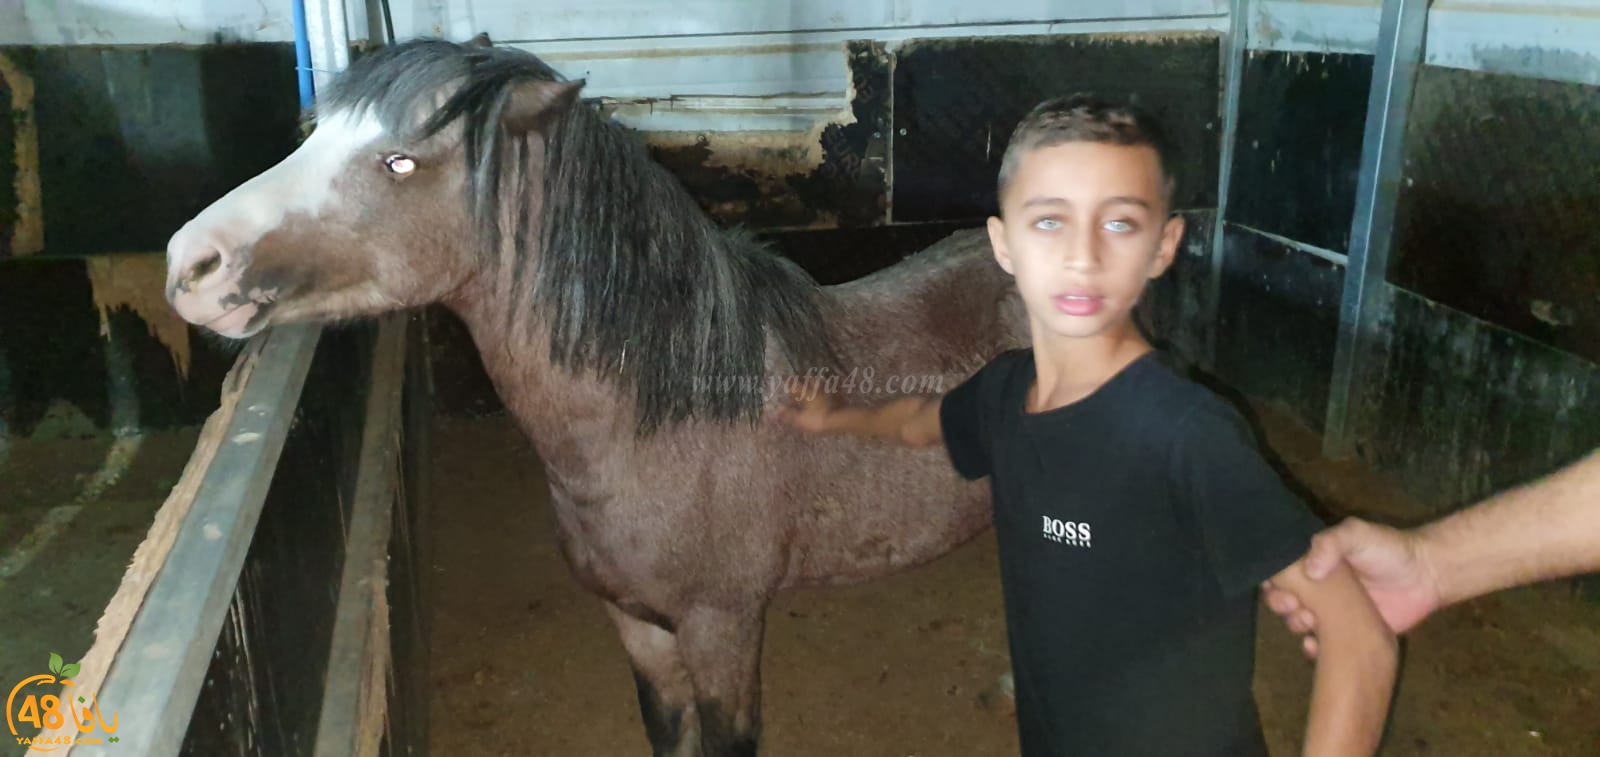  اللد: بعد وفاة الطفل رياض ابو شريقي دهساً - صديقه وسيم في زيارة لعائلته 